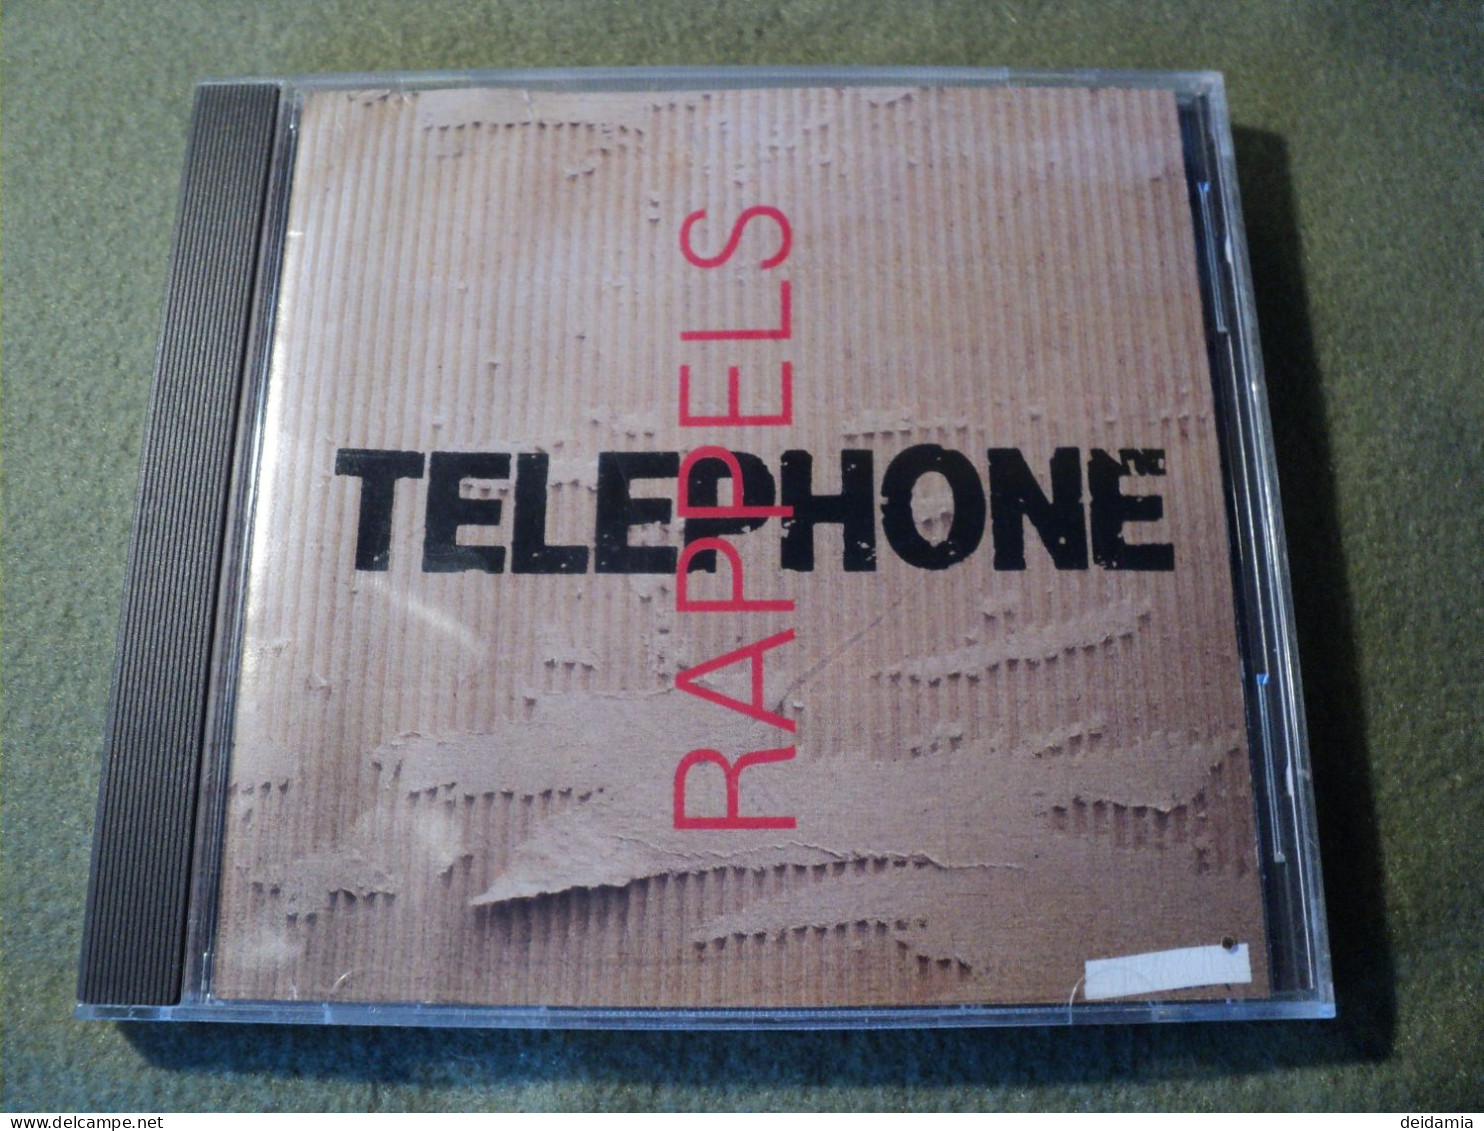 TELEPHONE. CD 15 TITRES DE 1993. RAPPELS. VIRGIN 866462 LA BOMBE HUMAINE / HYGIAPHONE / ARGENT TROP CHER / CRACHE TON VE - Andere - Franstalig